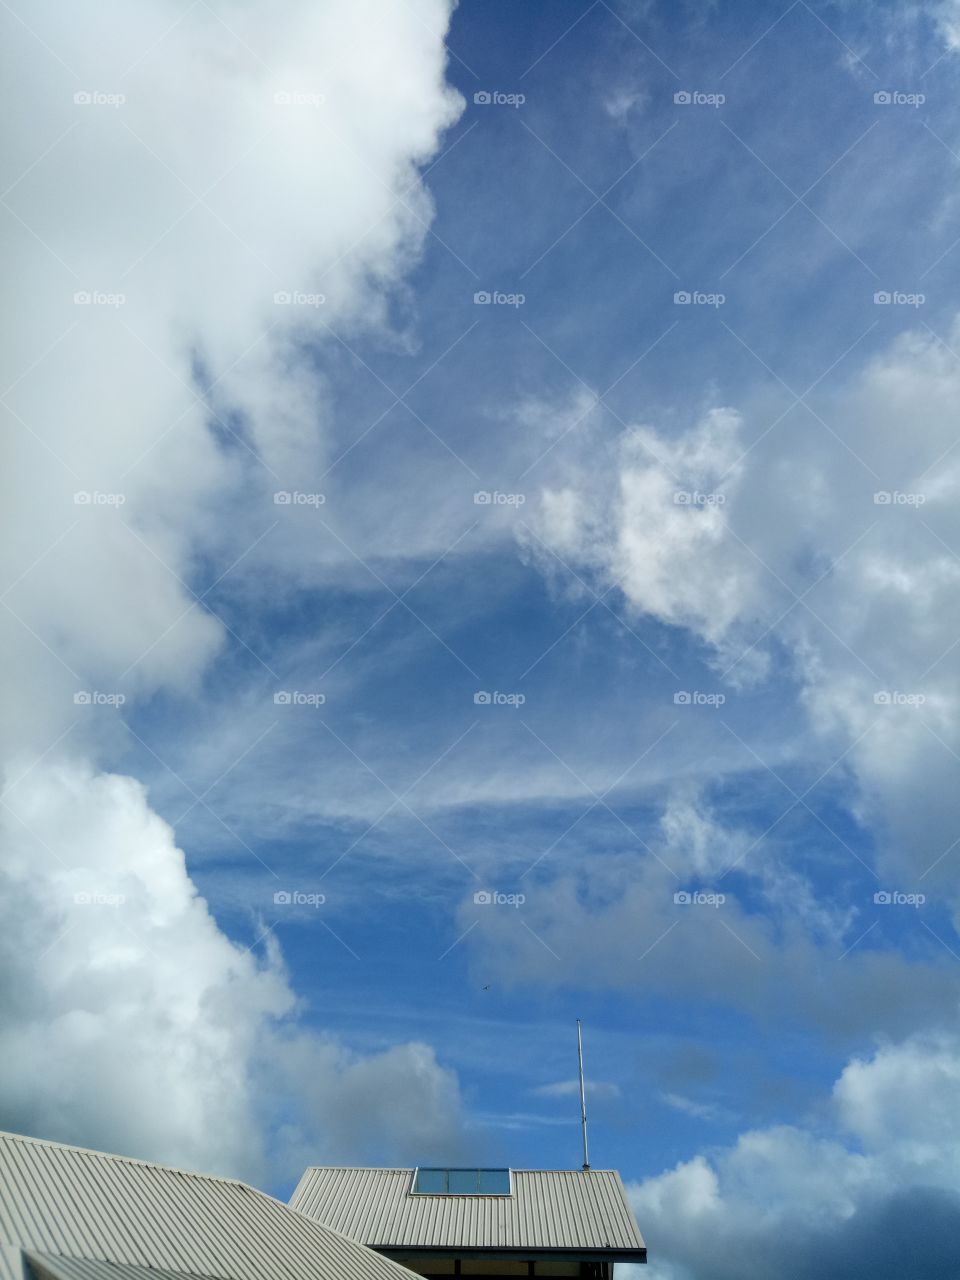 strange cloud patterns in the Australian sky